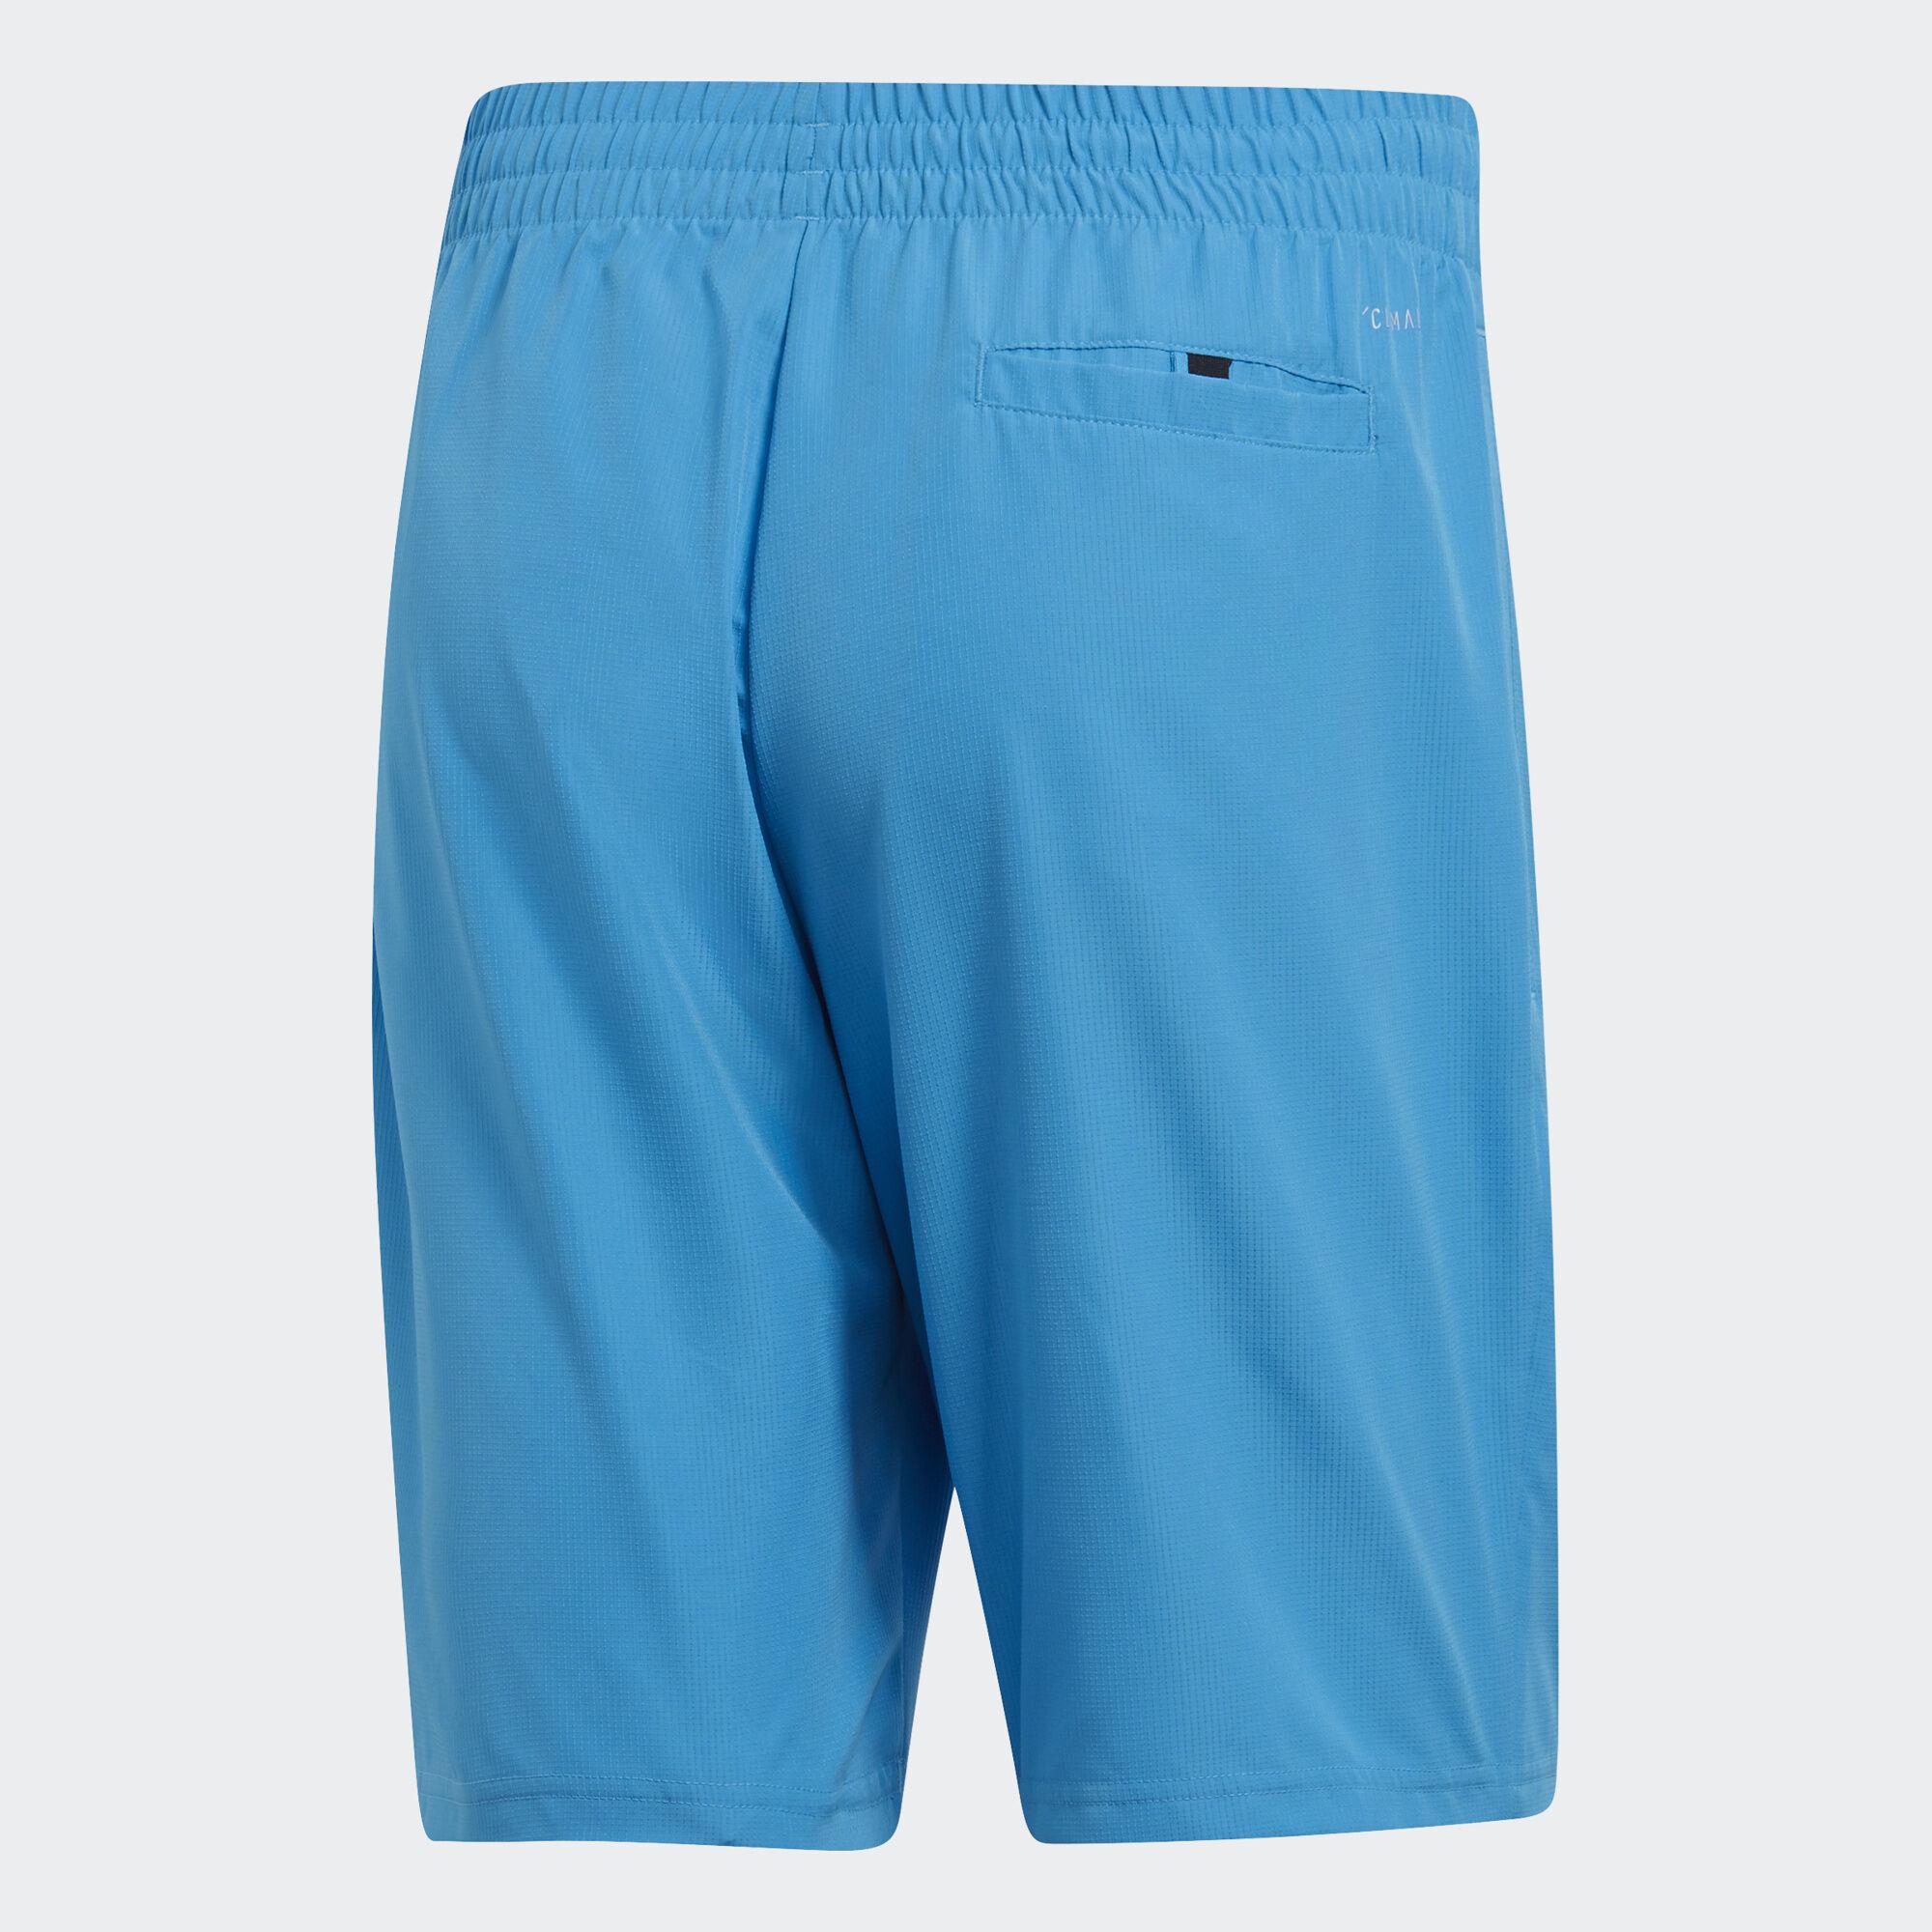 Adidas Mens Club 9 Inch Tennis Shorts - Shock Cyan - Tennisnuts.com